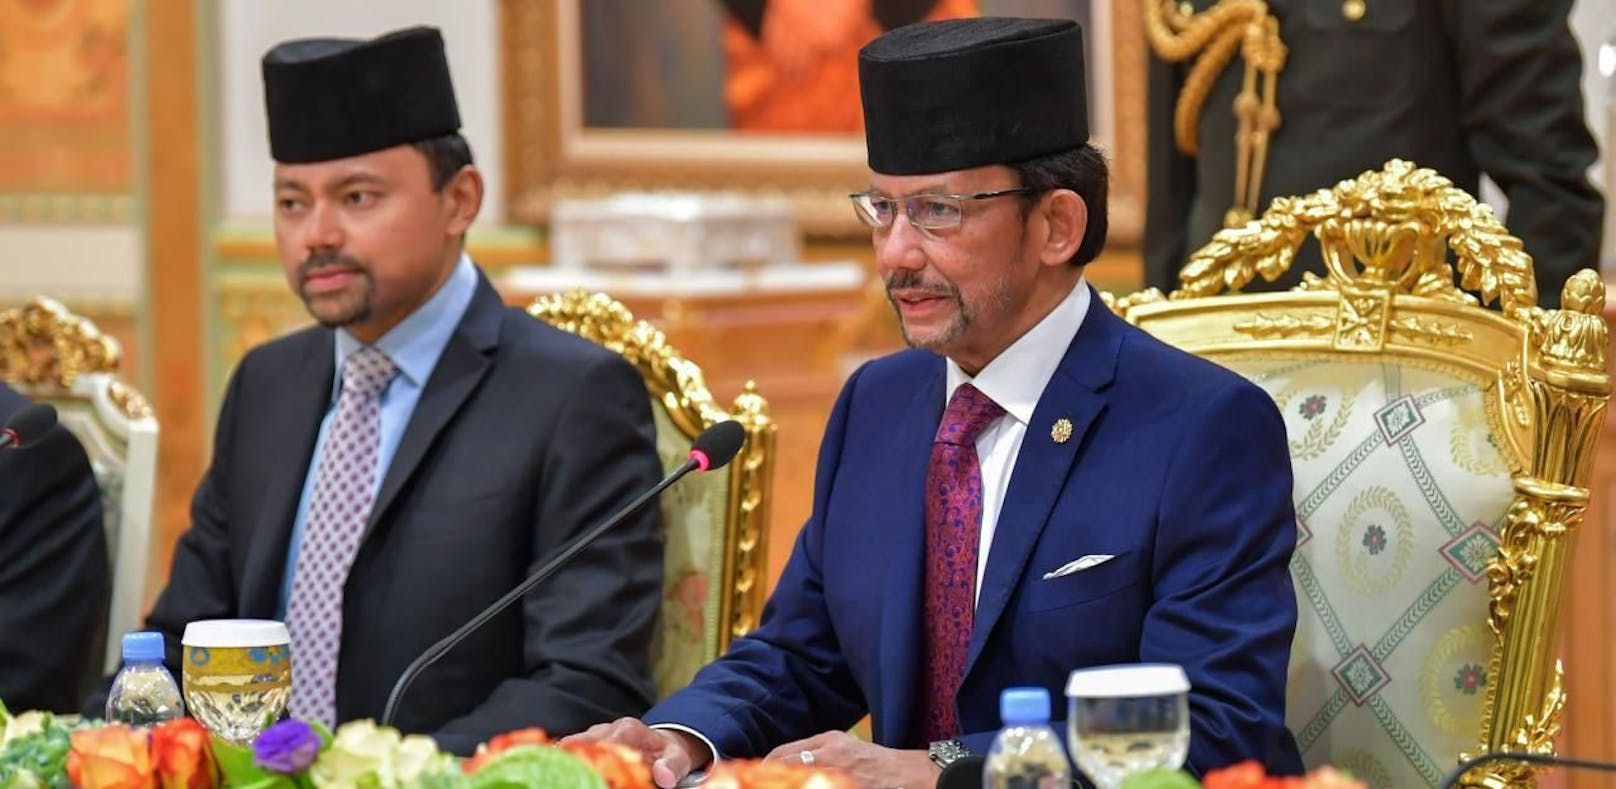 Hassanal Bolkiah (r.), der Sultan von Brunei, gilt als einer der reichsten Männer der Welt.